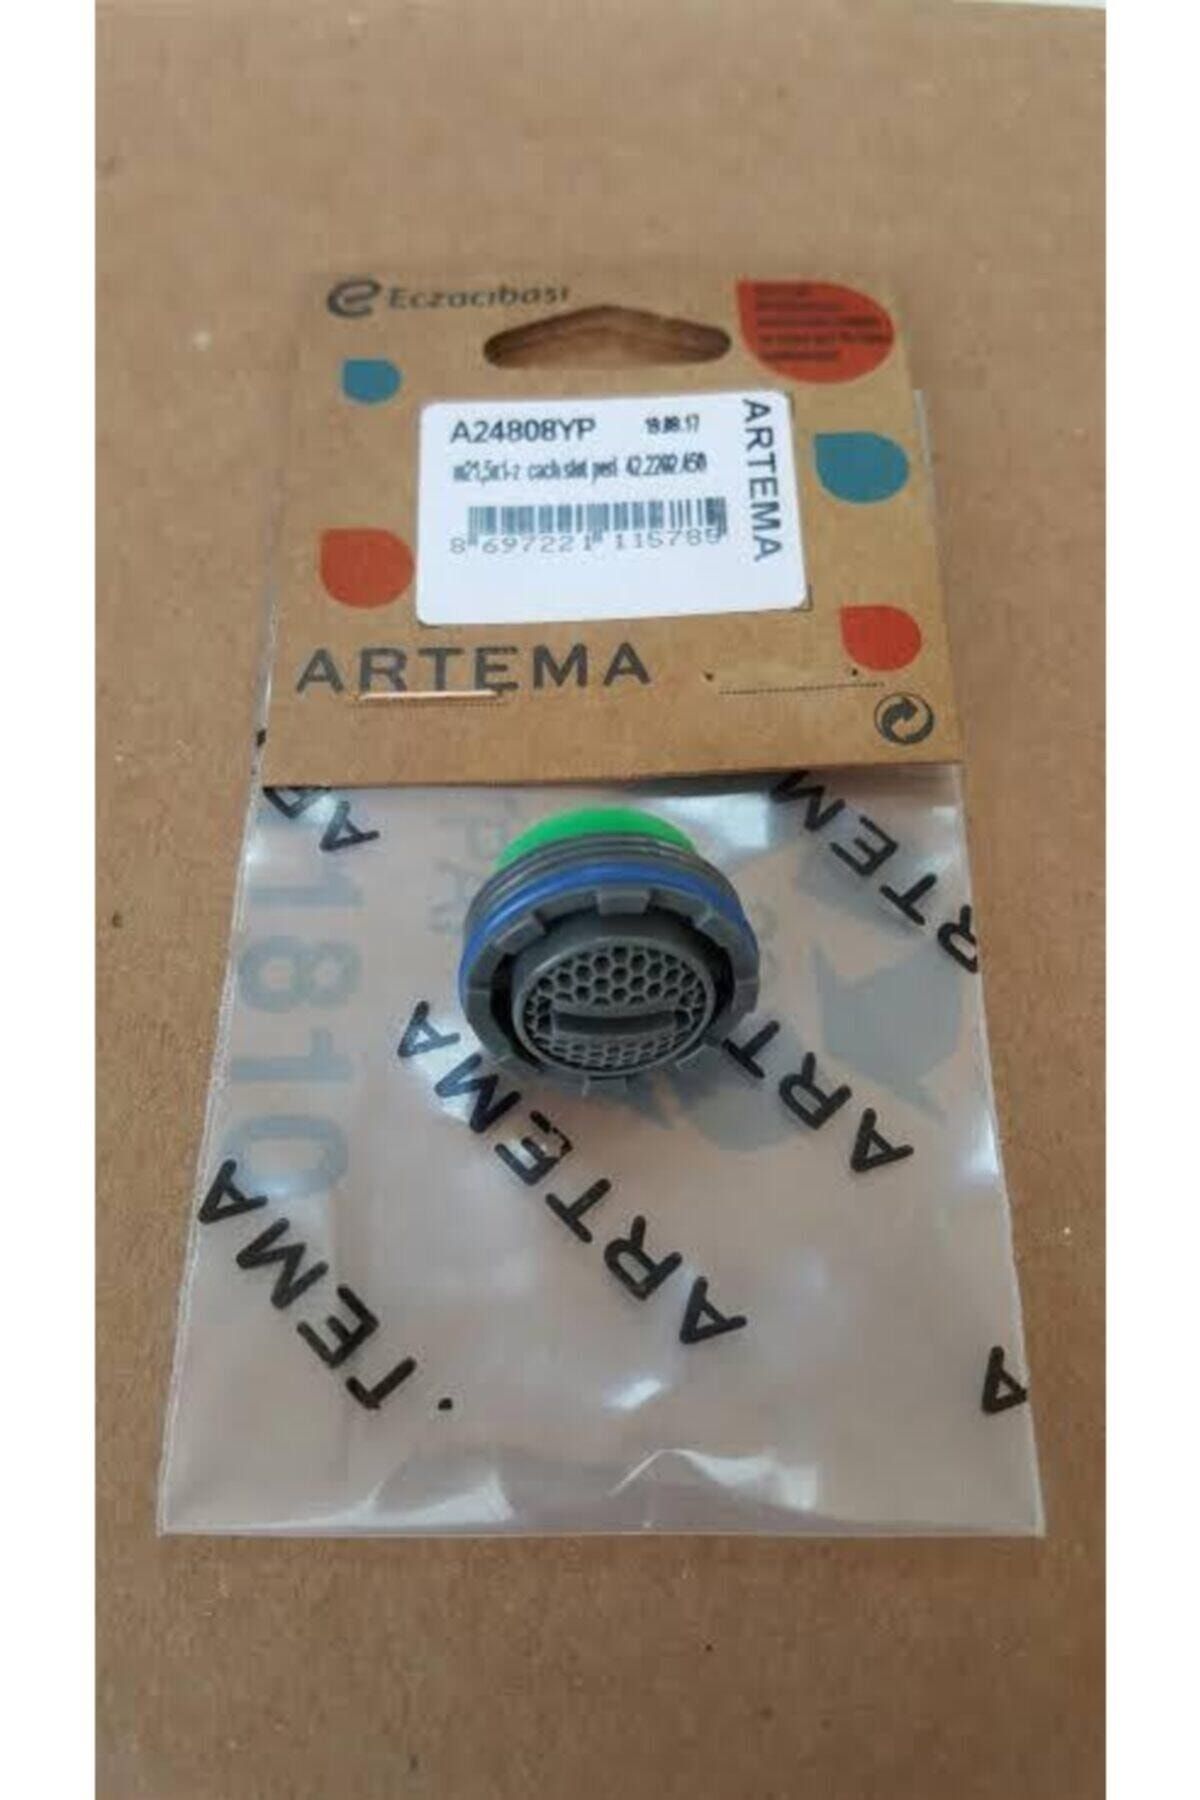 Artema Batarya Ucu Perlatör Filtre A24808yp